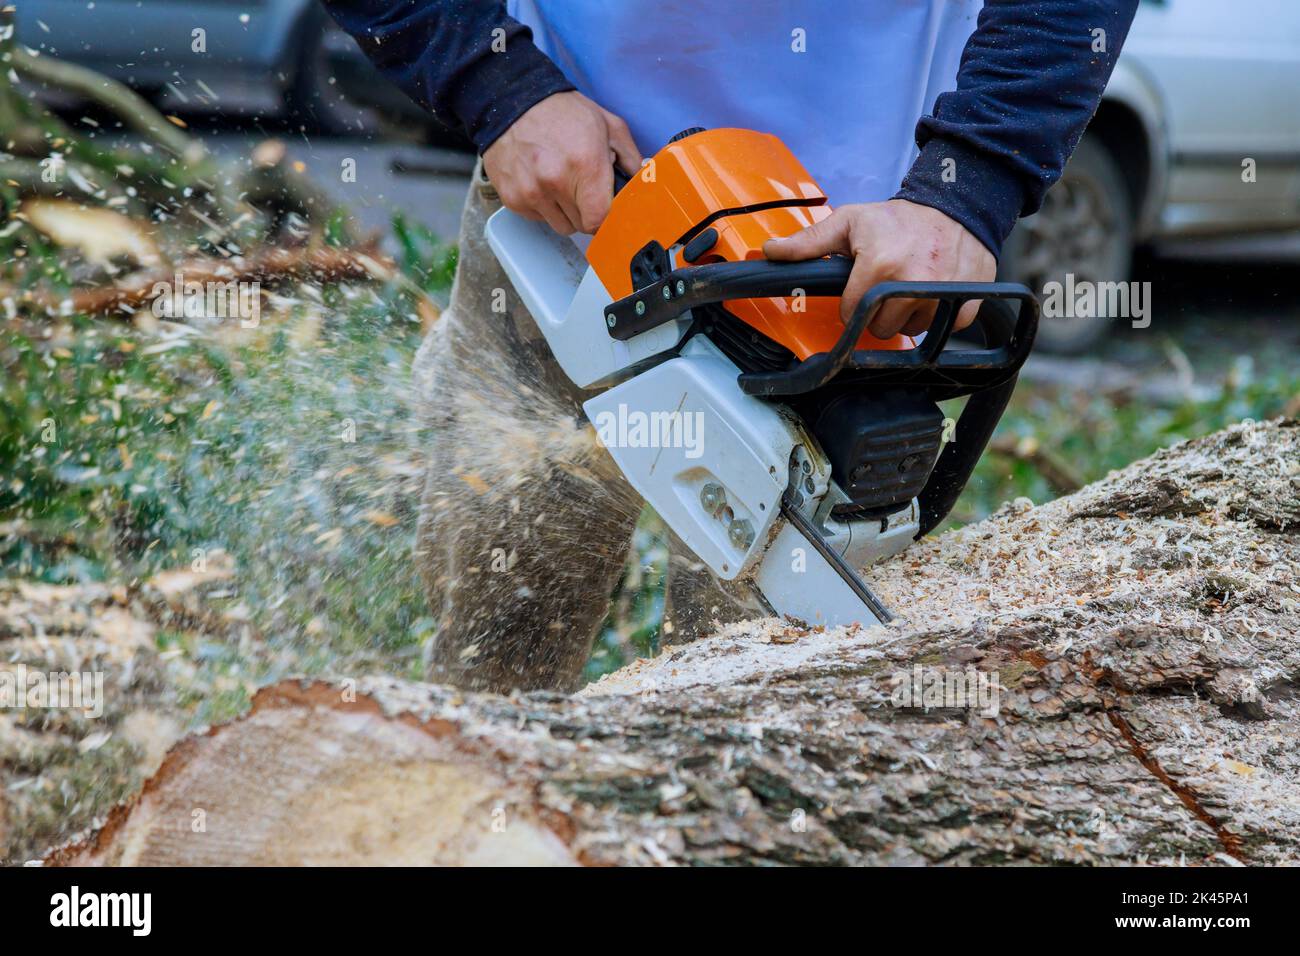 Während eines Hurrikans sägte ein Arbeiter mit einer Kettensäge durch den Baumsturz und stürzten Bäume auf den Asphalt Stockfoto